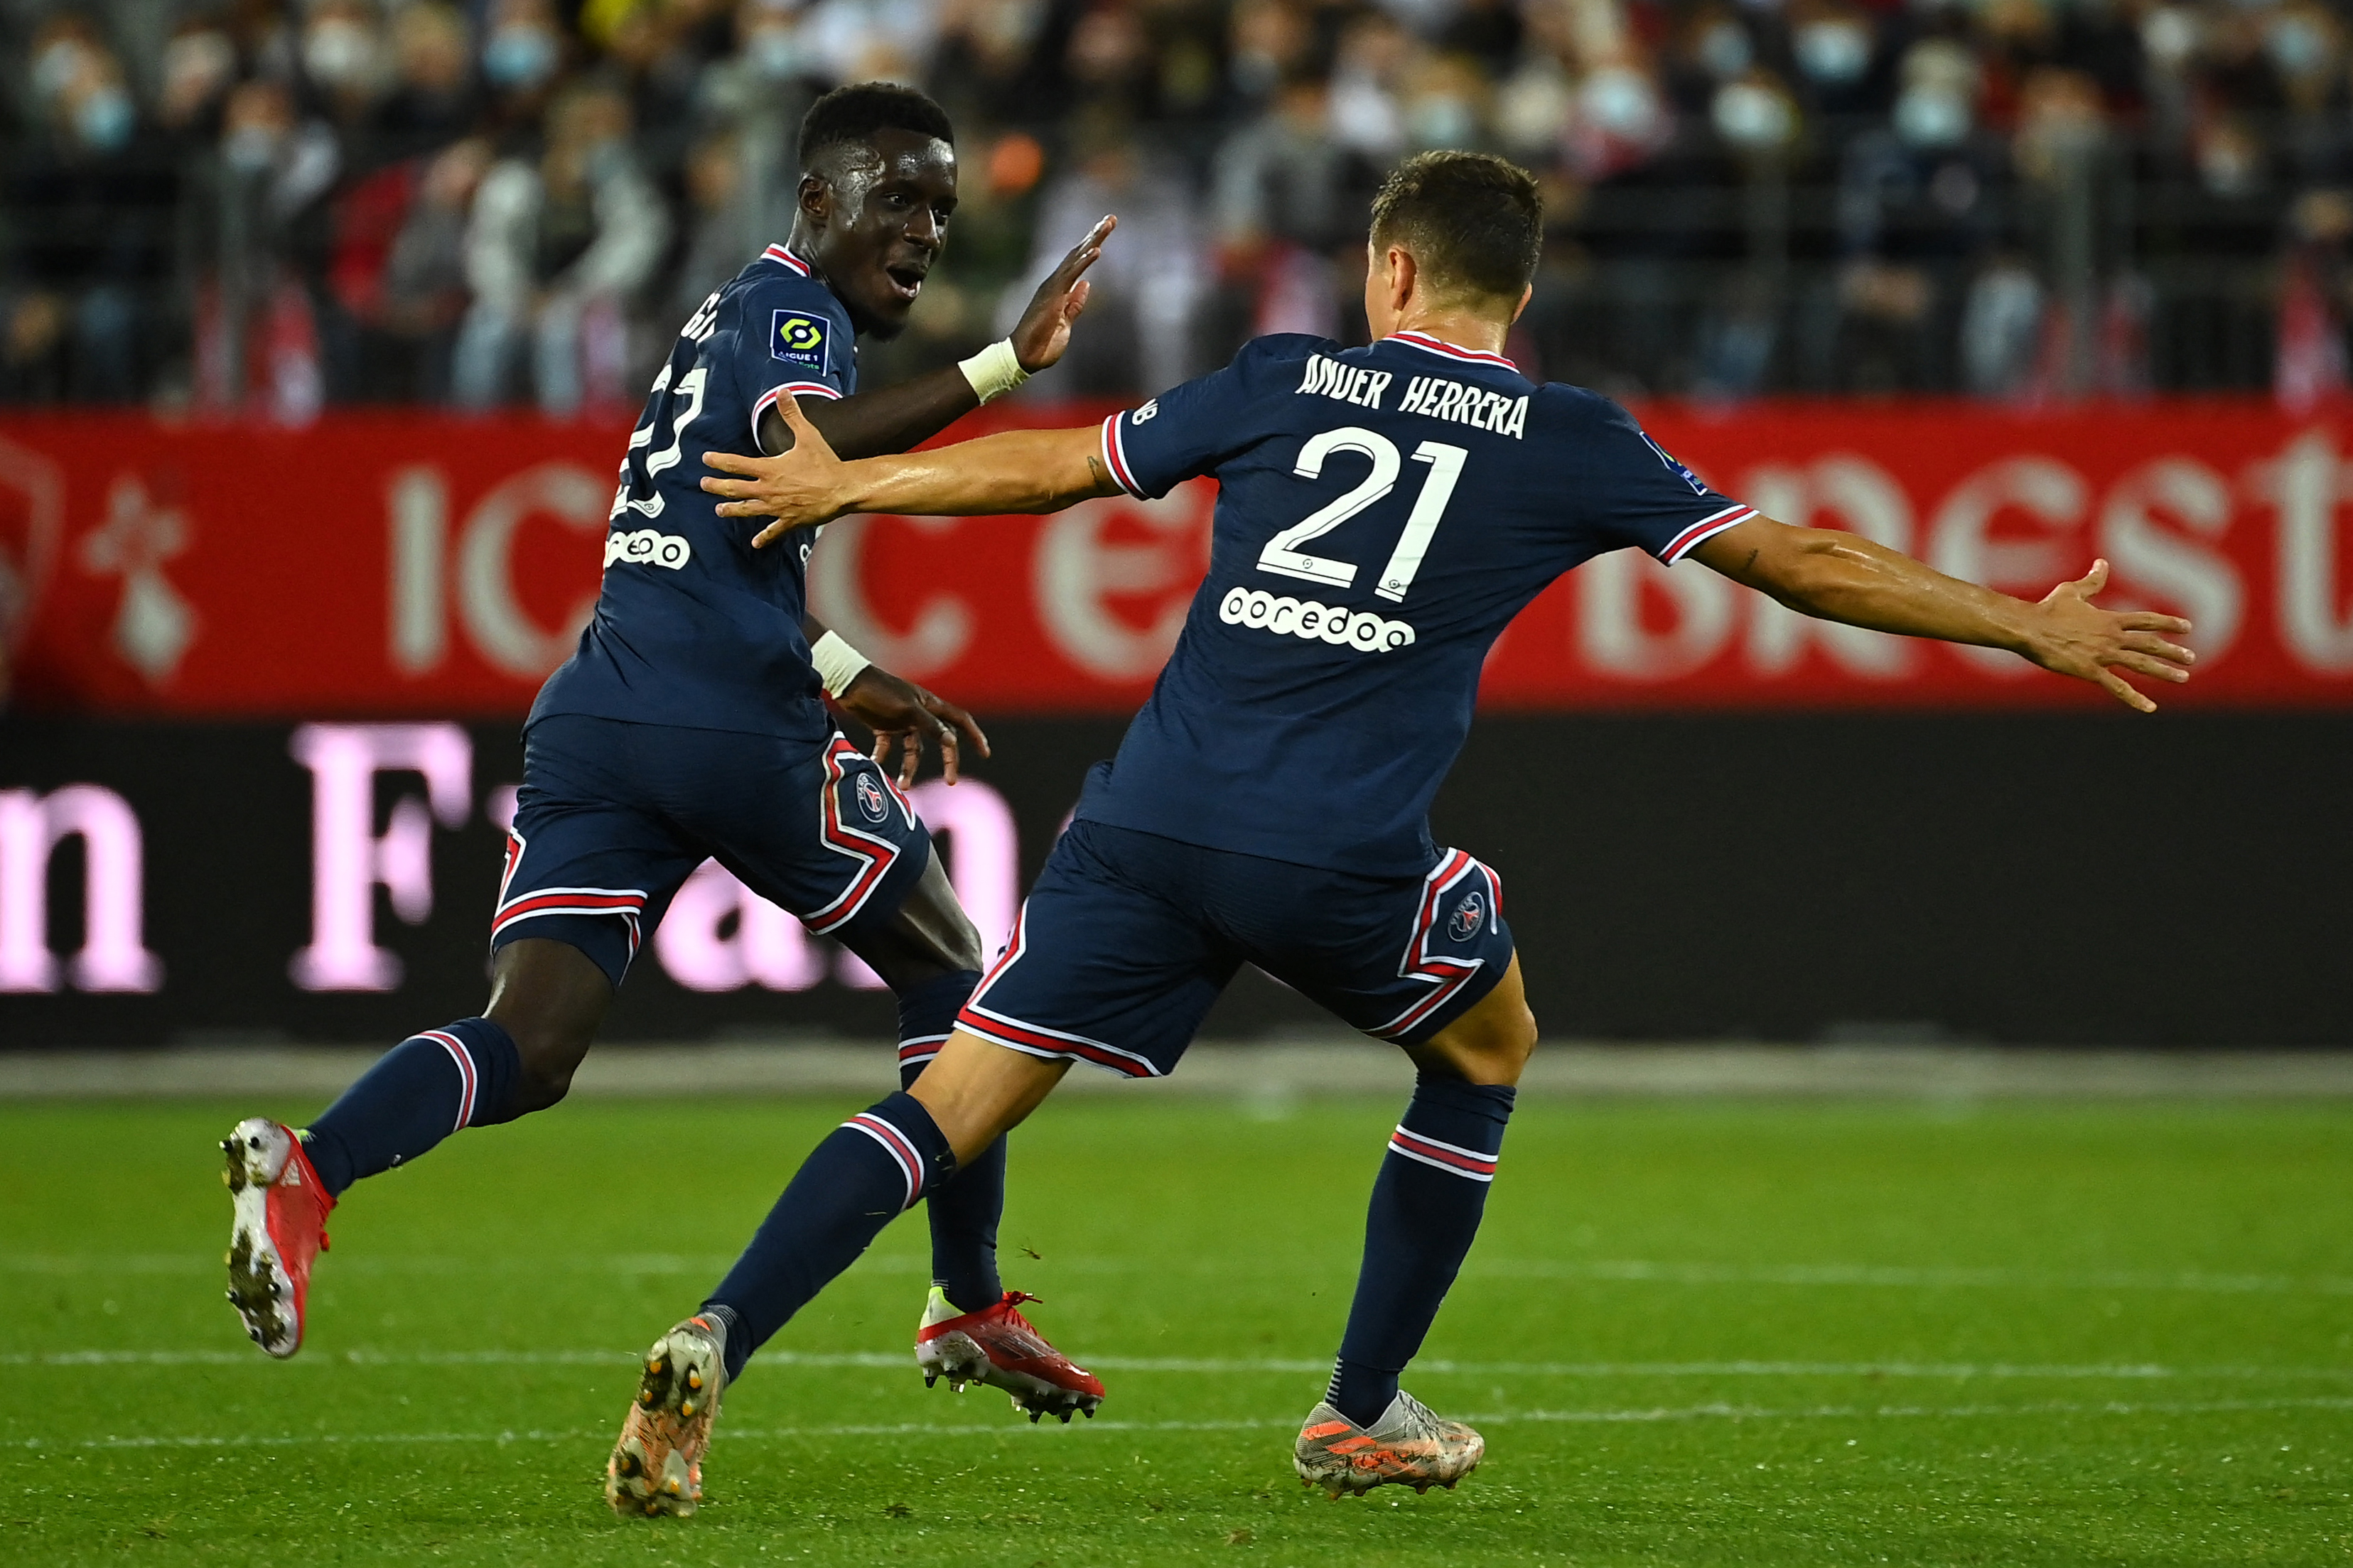 PSG-Clermont (4-0) : Gueye, Herrera... à Paris, maintenant les milieux marquent